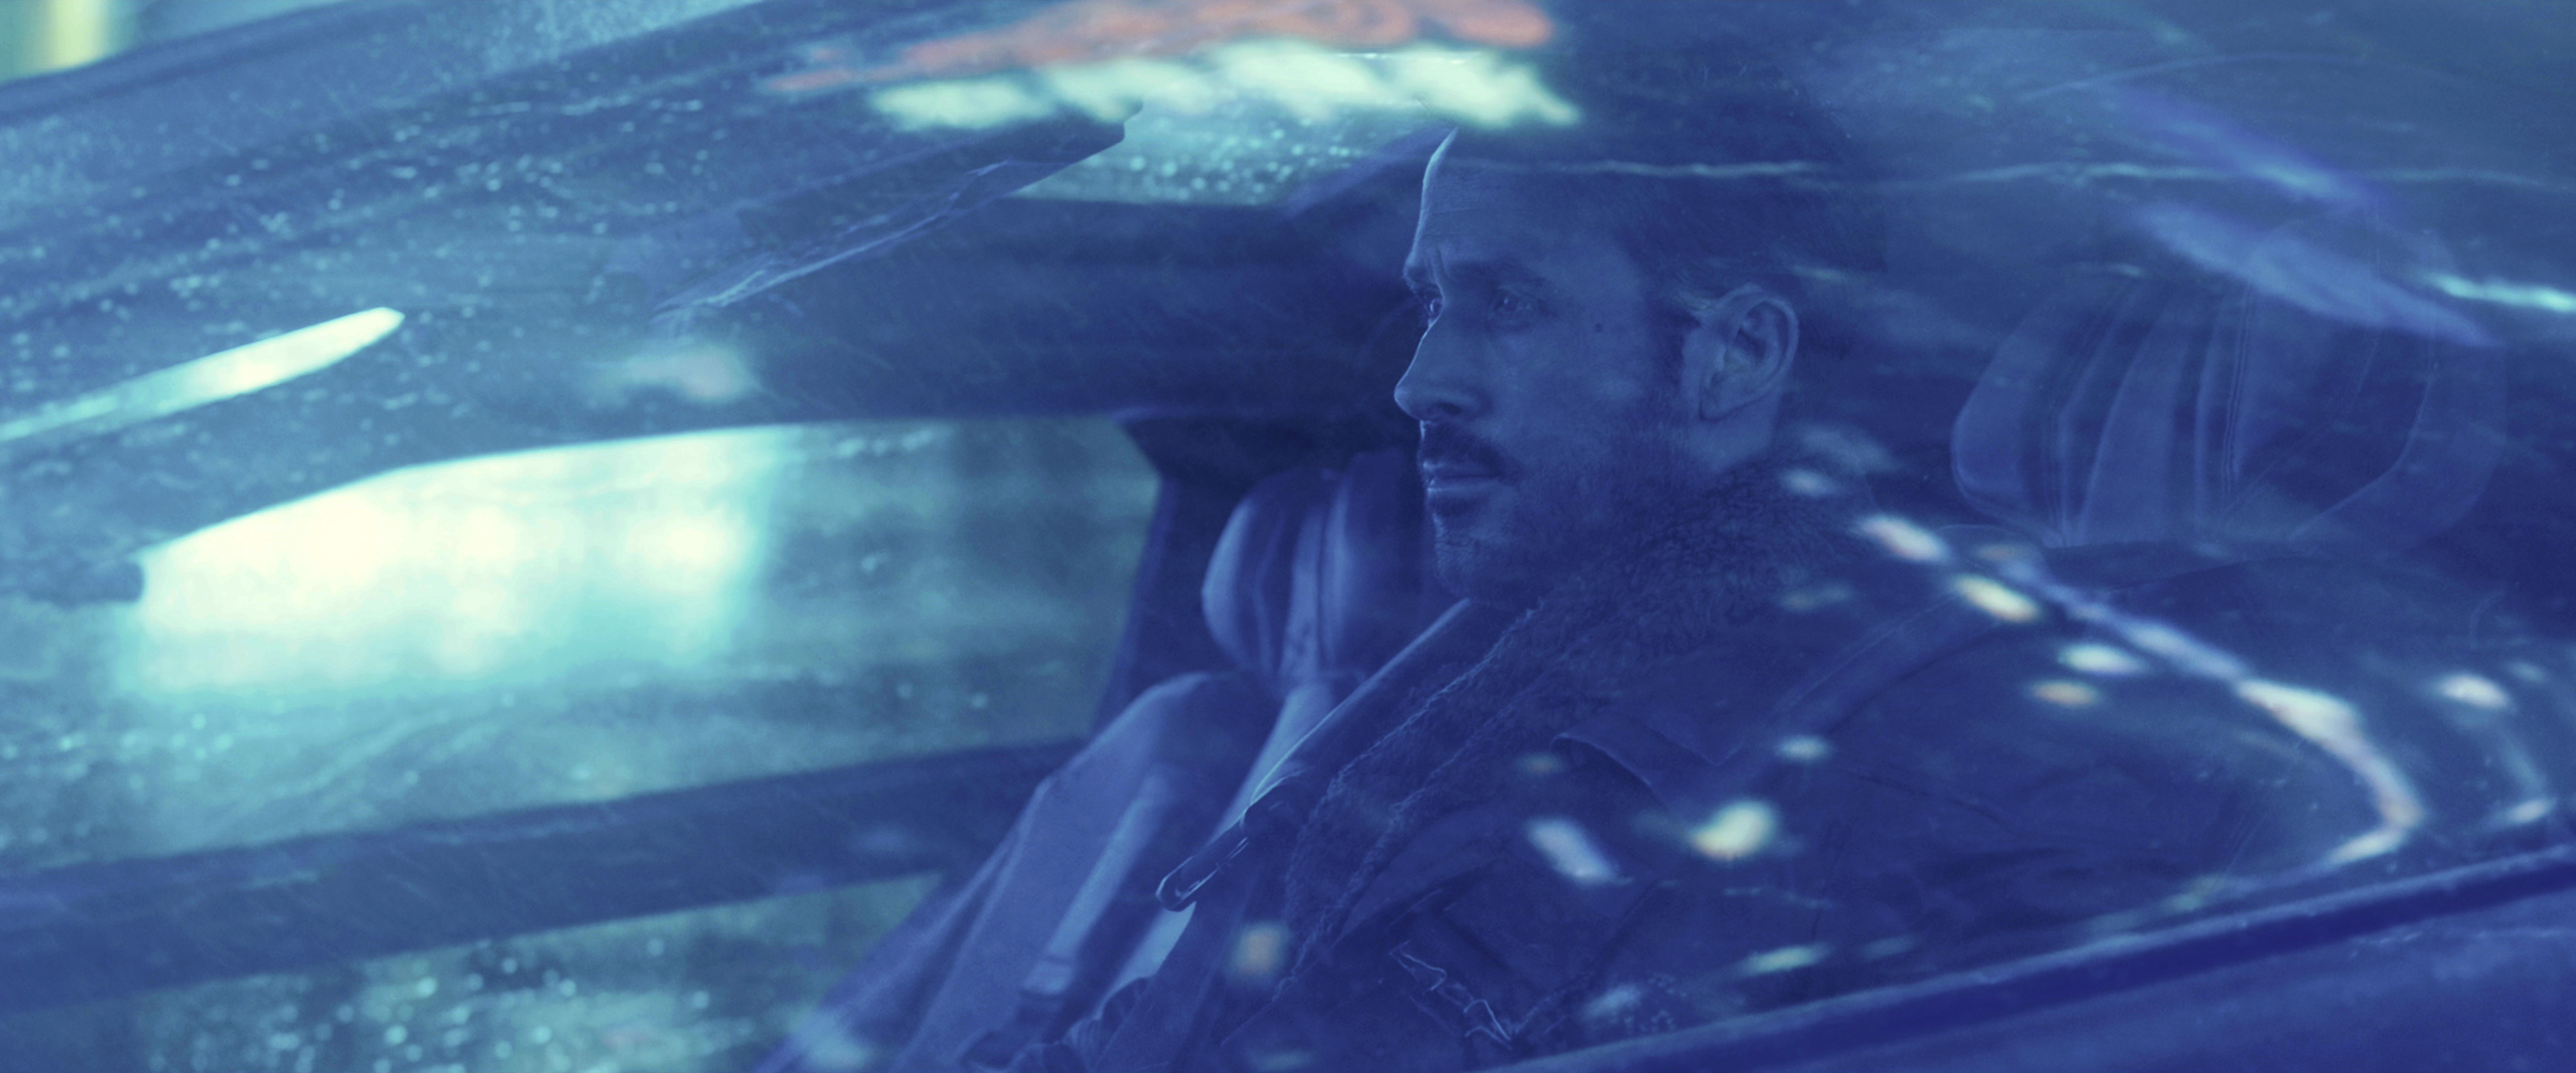 Bladerunner Blade Runner 2049 Cyberpunk Movies Ryan Gosling 2017 Year 3840x1600